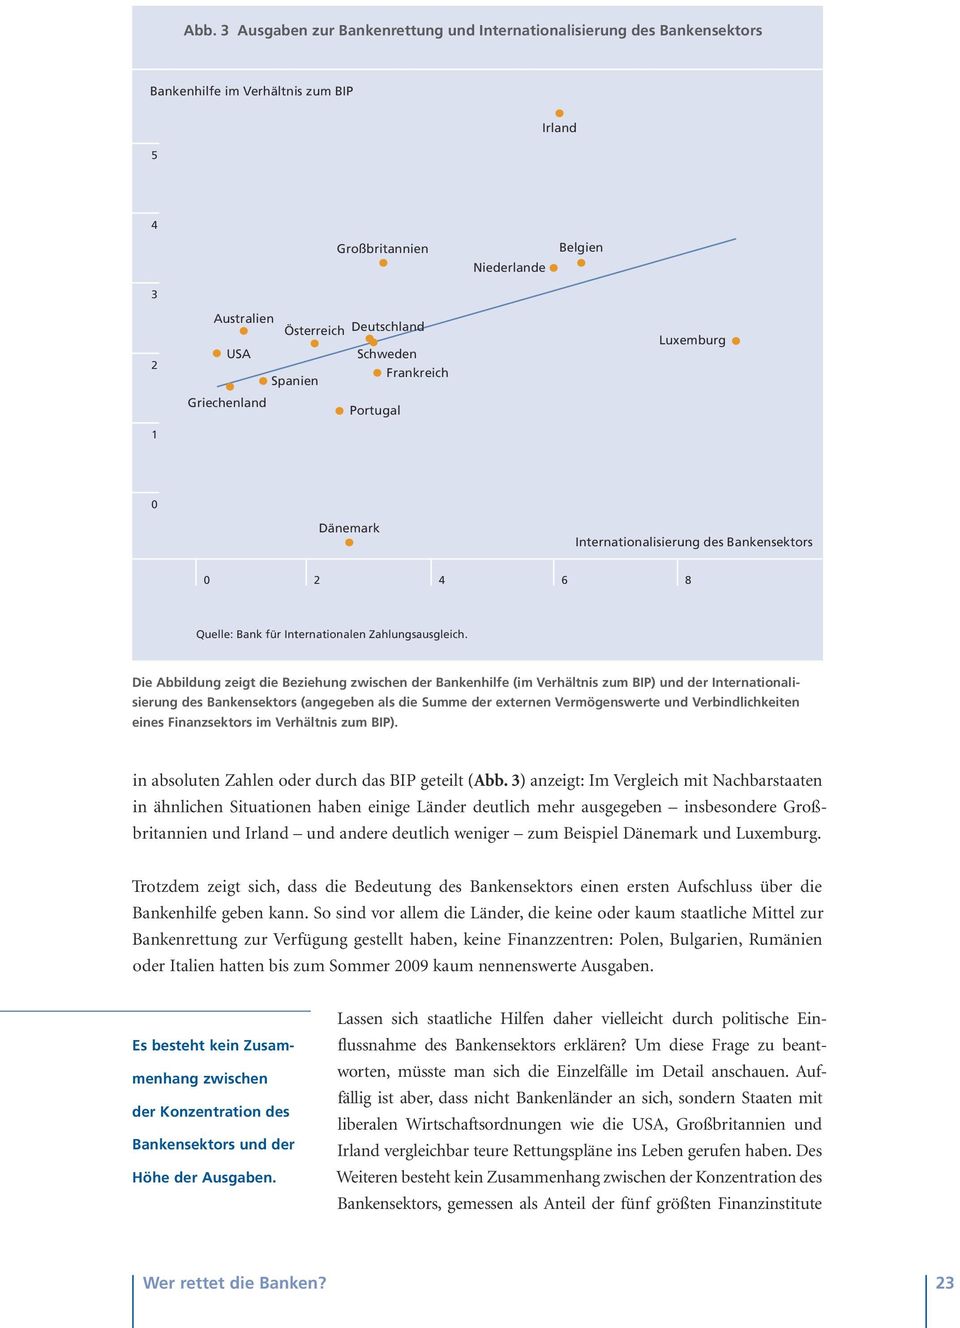 Die Abbildung zeigt die Beziehung zwischen der Bankenhilfe (im Verhältnis zum BIP) und der Internationalisierung des Bankensektors (angegeben als die Summe der externen Vermögenswerte und